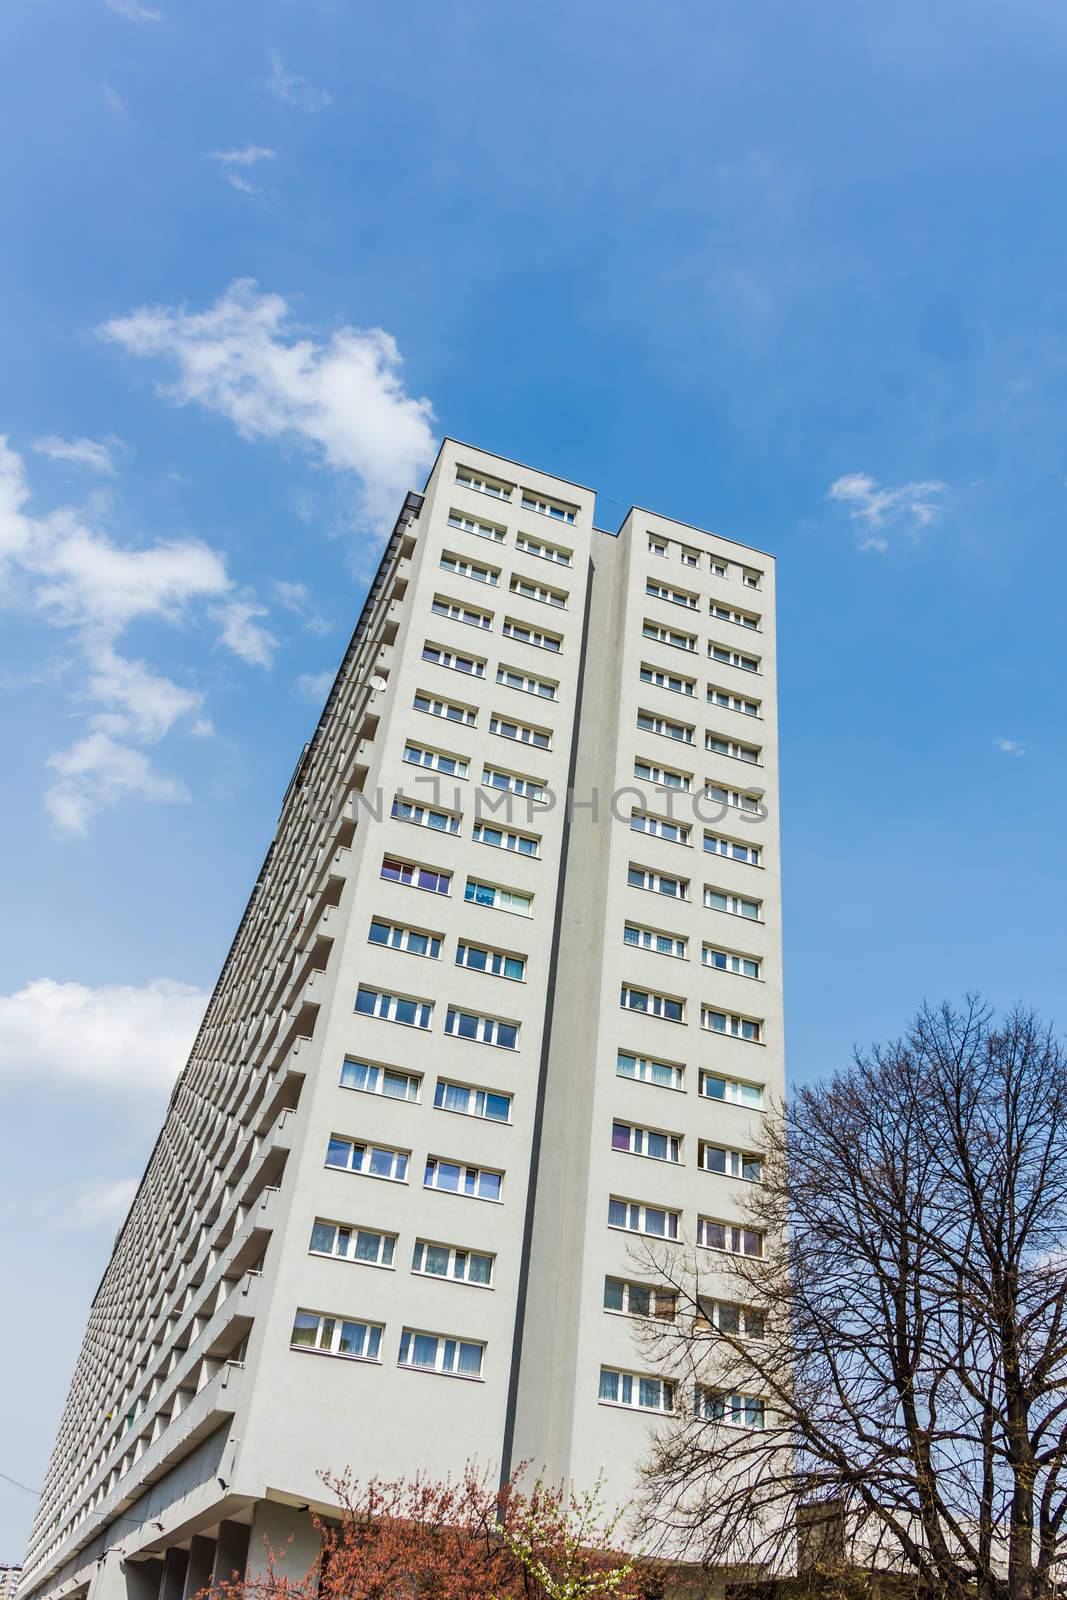 Residential block by pawel_szczepanski